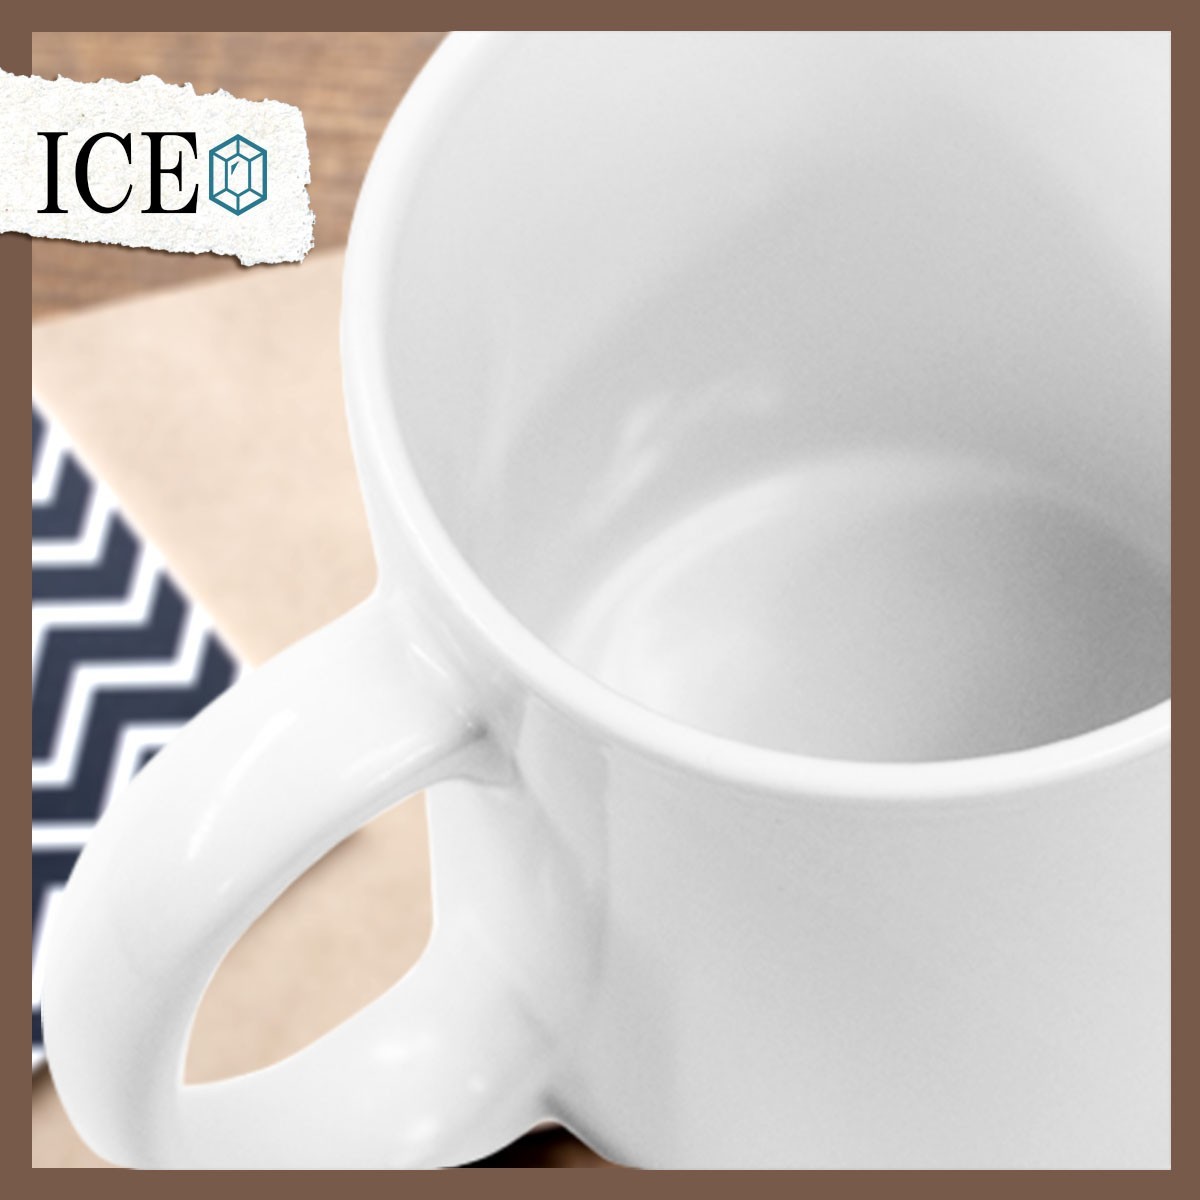 アイス おもしろ マグカップ コップ アイスクリーム ice ピノ 陶器 可愛い かわいい 白 シンプル かわいい カッコイイ シュール 面白い ジ_画像5